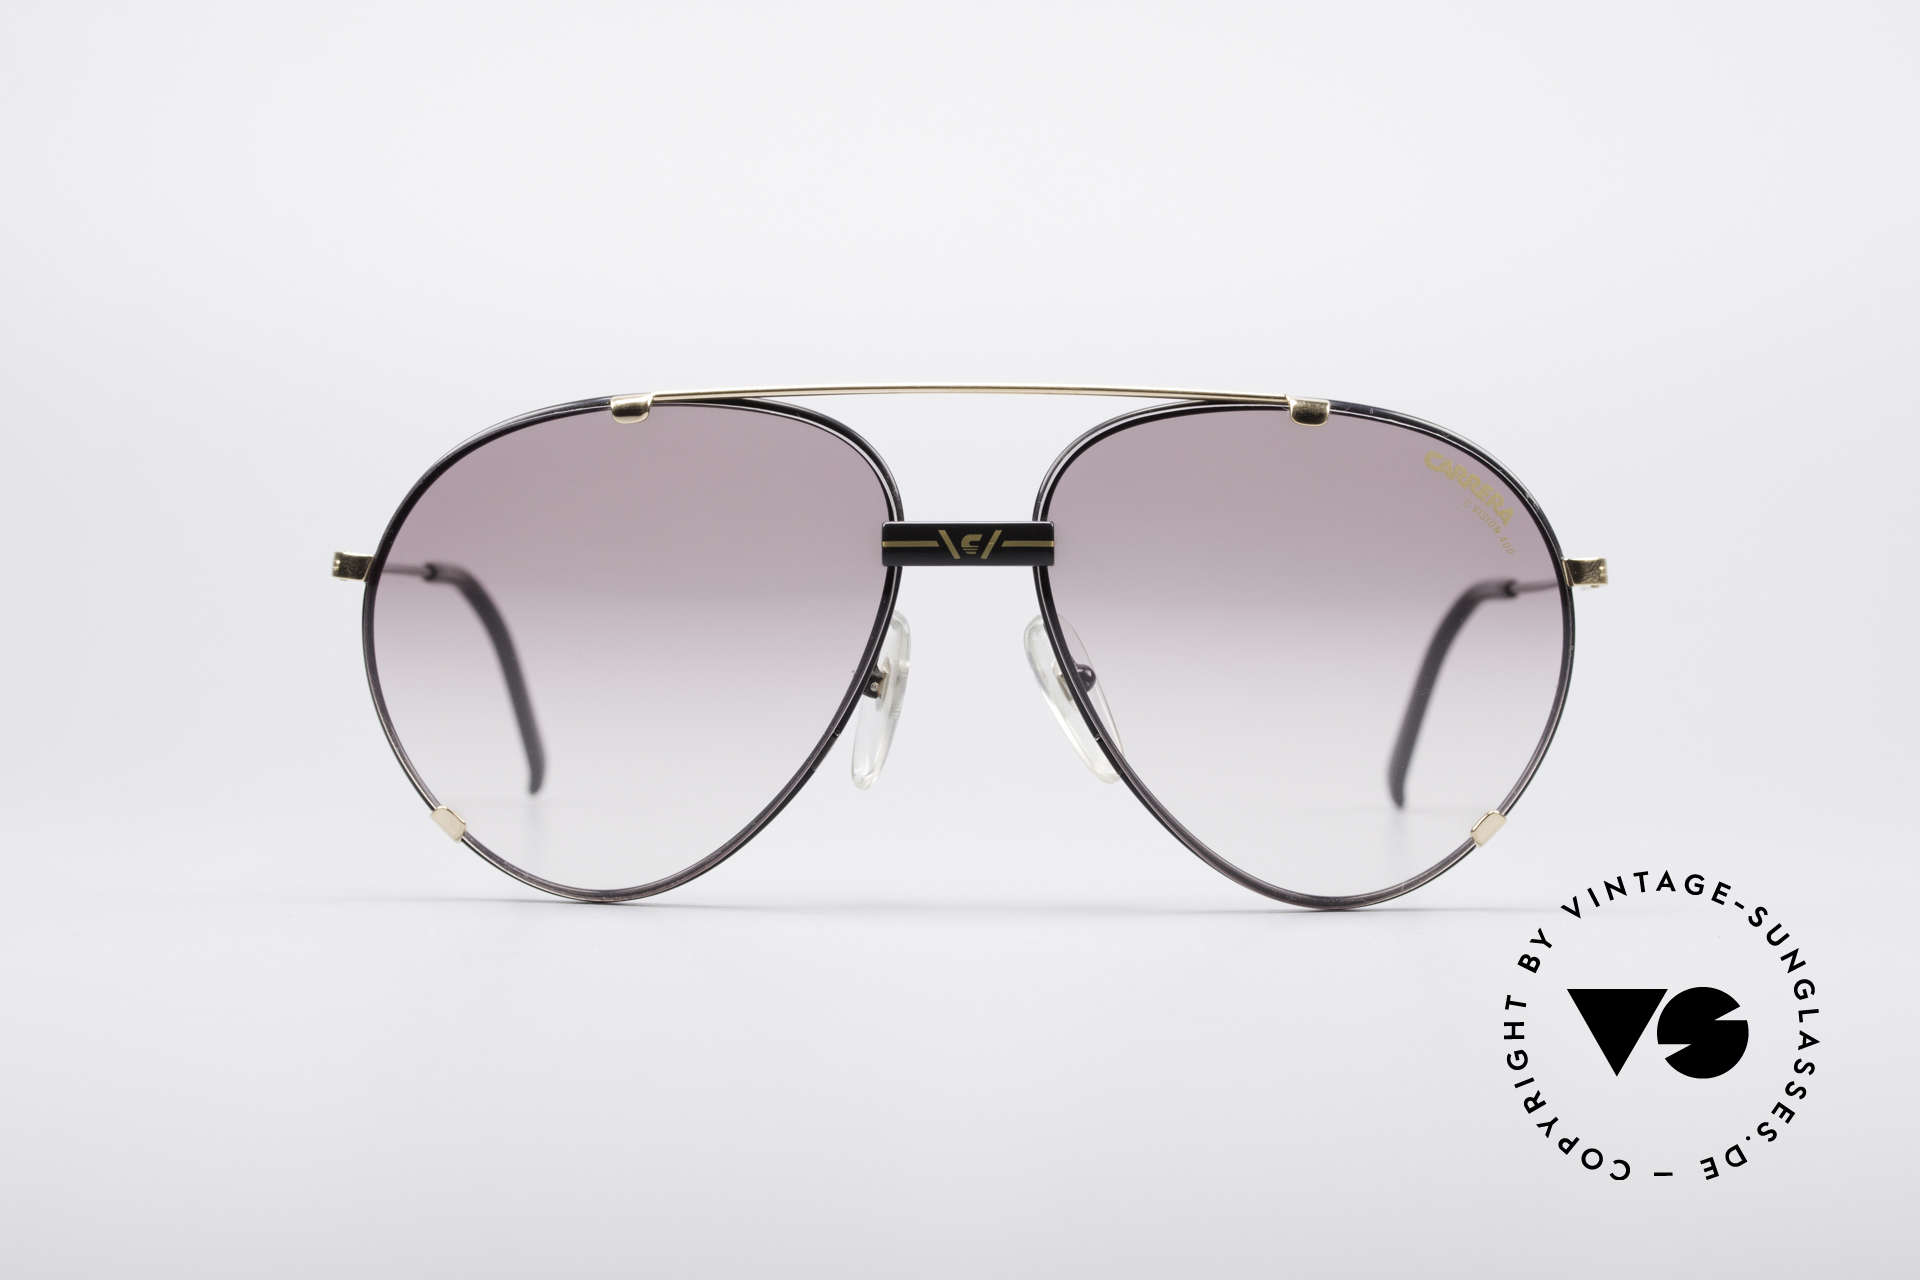 Sonnenbrillen Carrera 5463 90er Vintage Pilotenbrille 